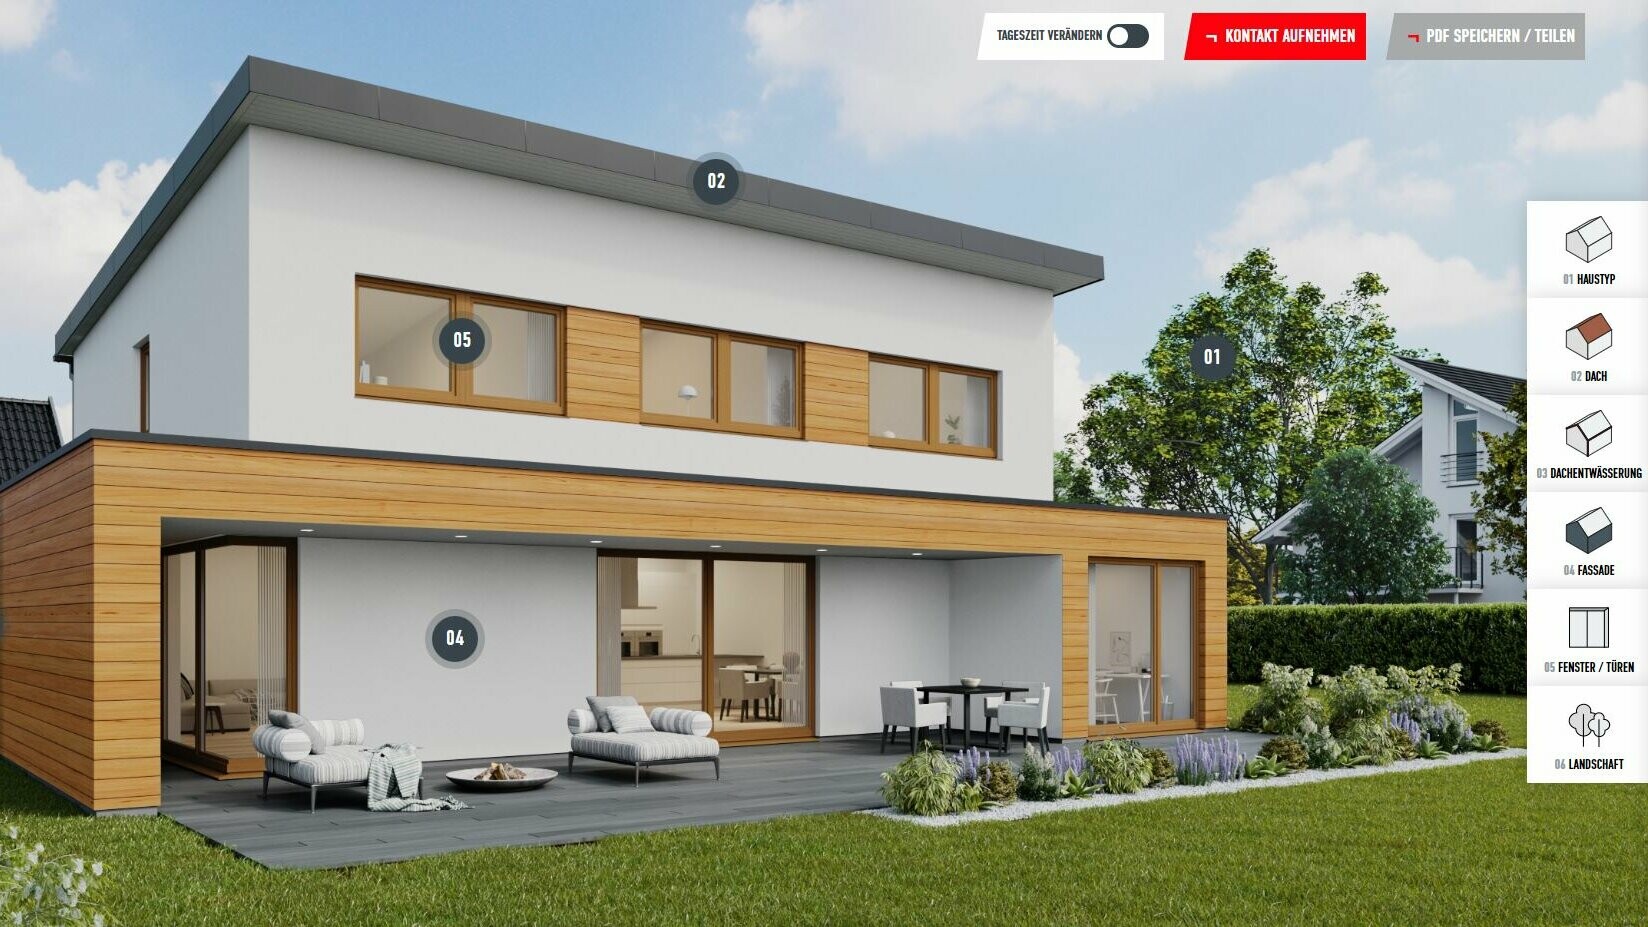 Primjer prikaza konfiguracije obiteljske kuće s jednostrešnim krovom u P.10 crnoj boji uključujući drvene elemente na fasadi. Kuća se nalazi u naseljenom području predgrađa.